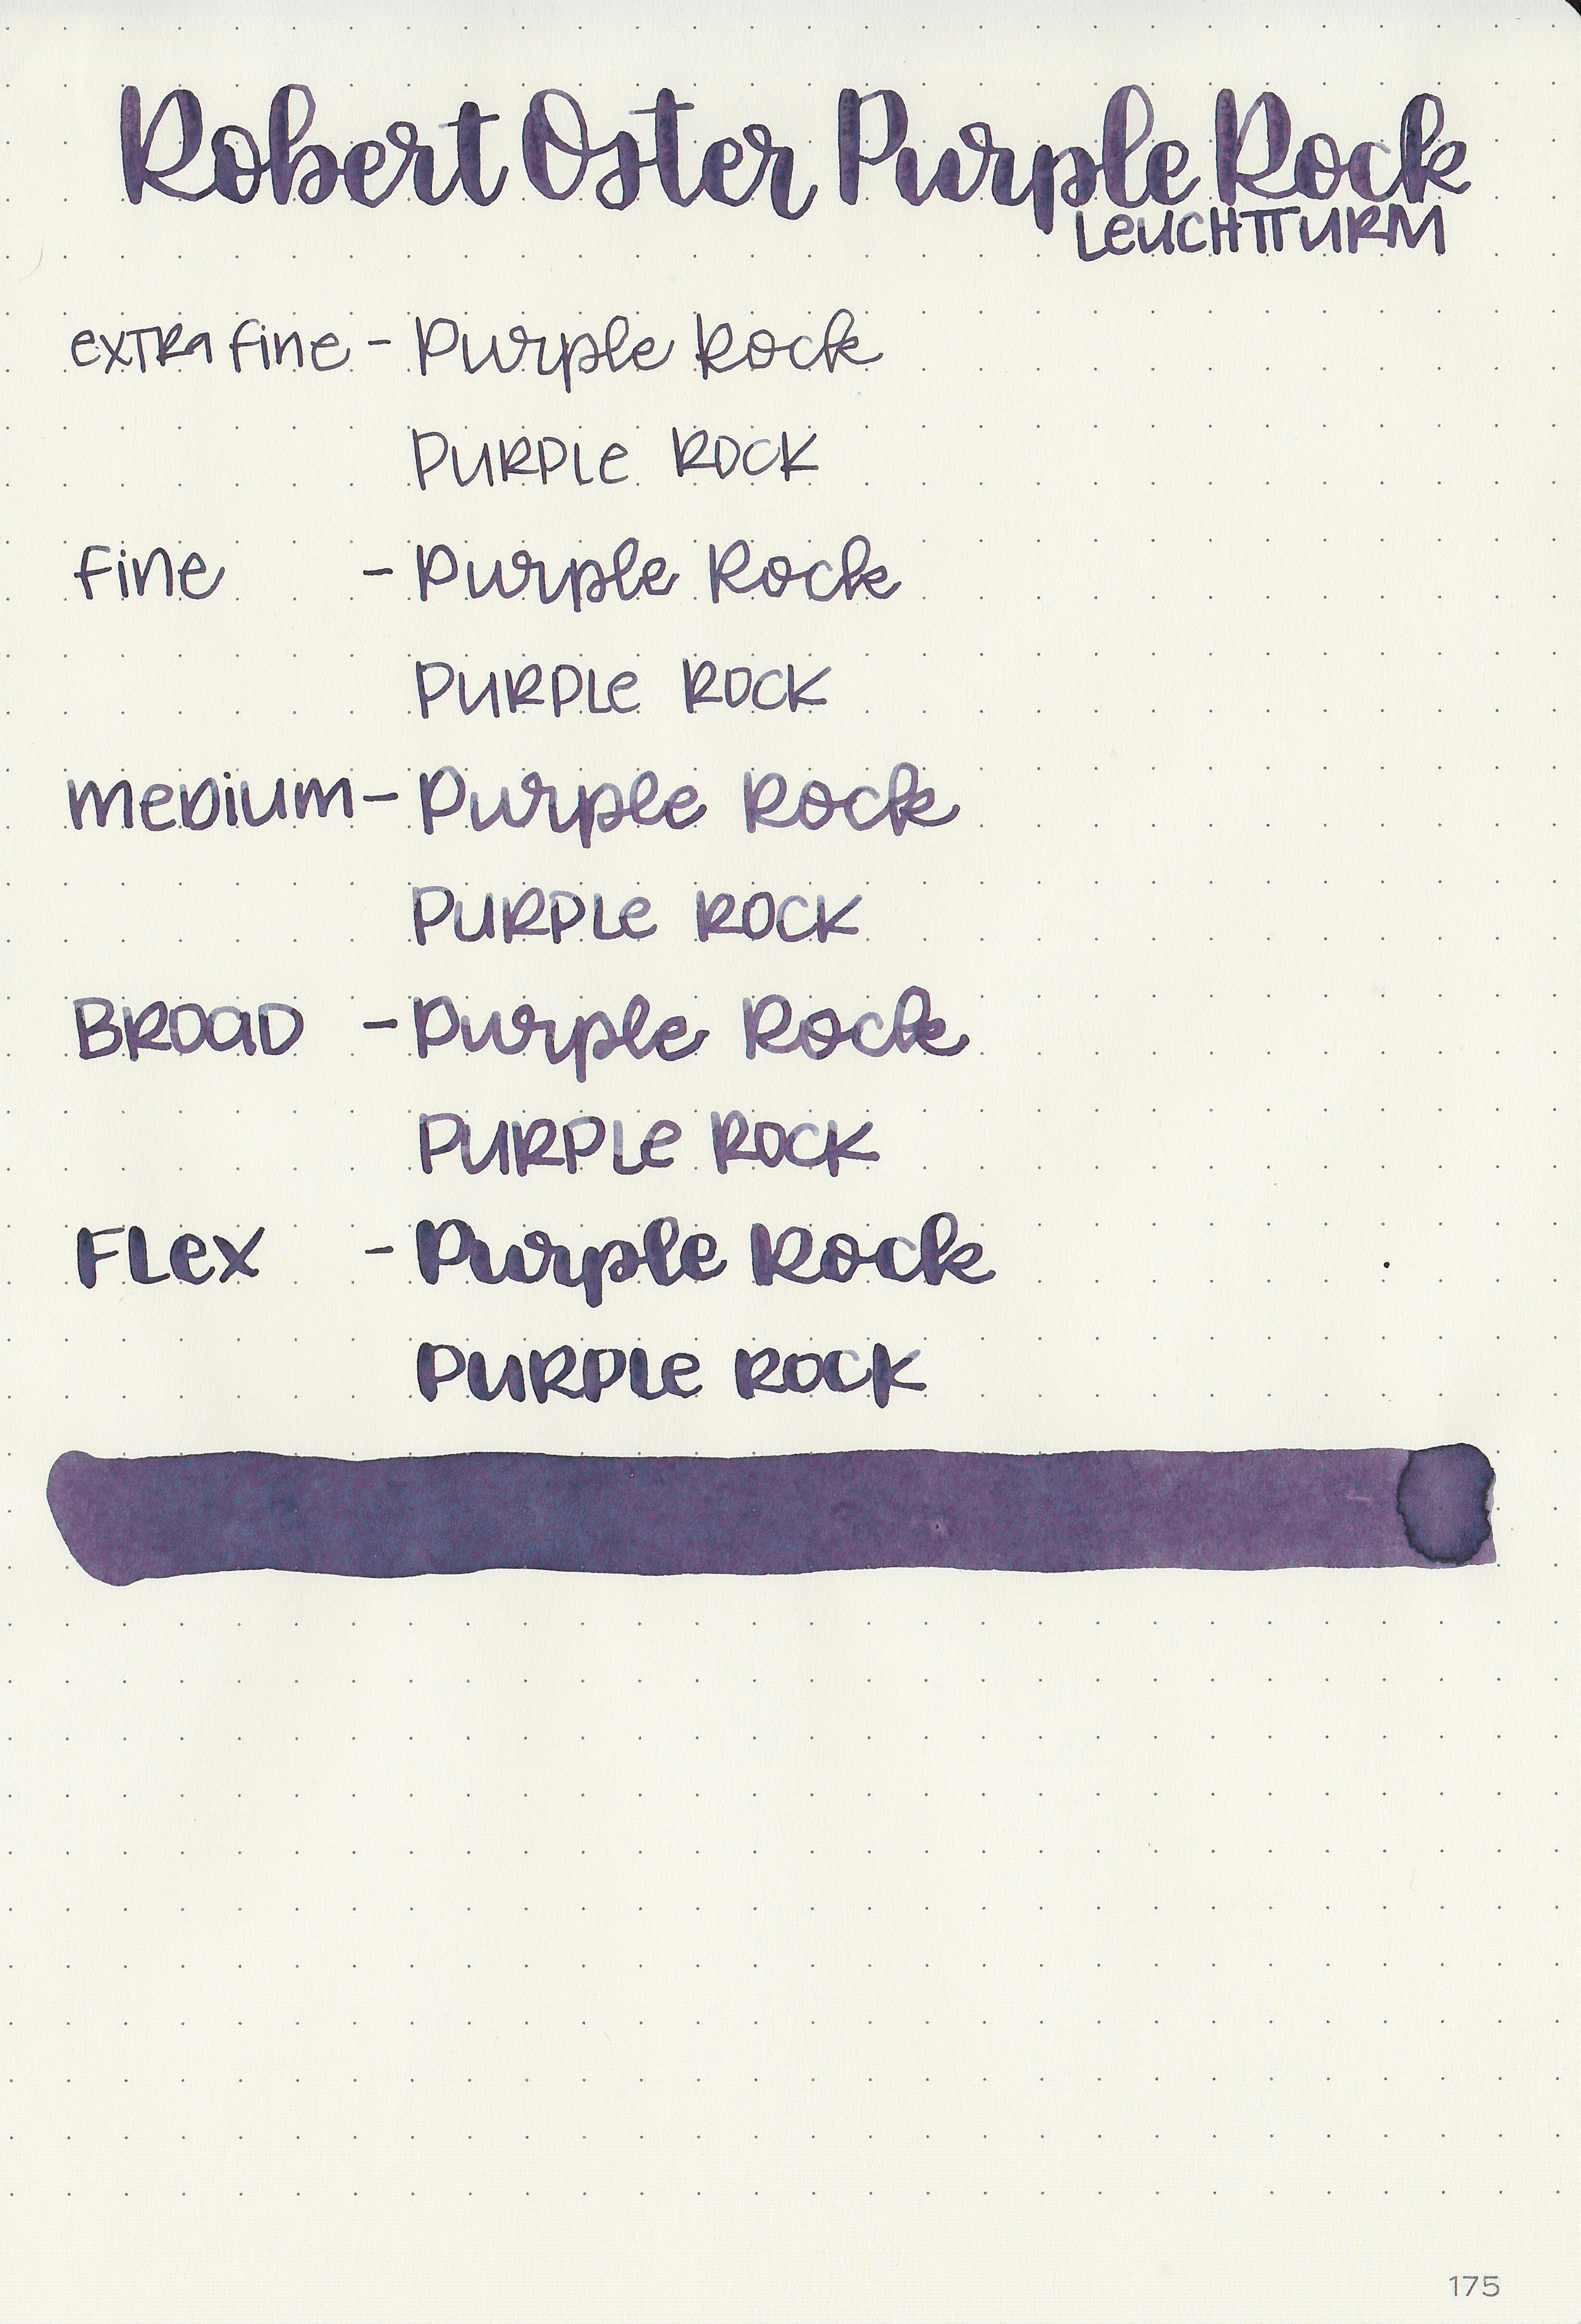 ro-purple-rock-9.jpg